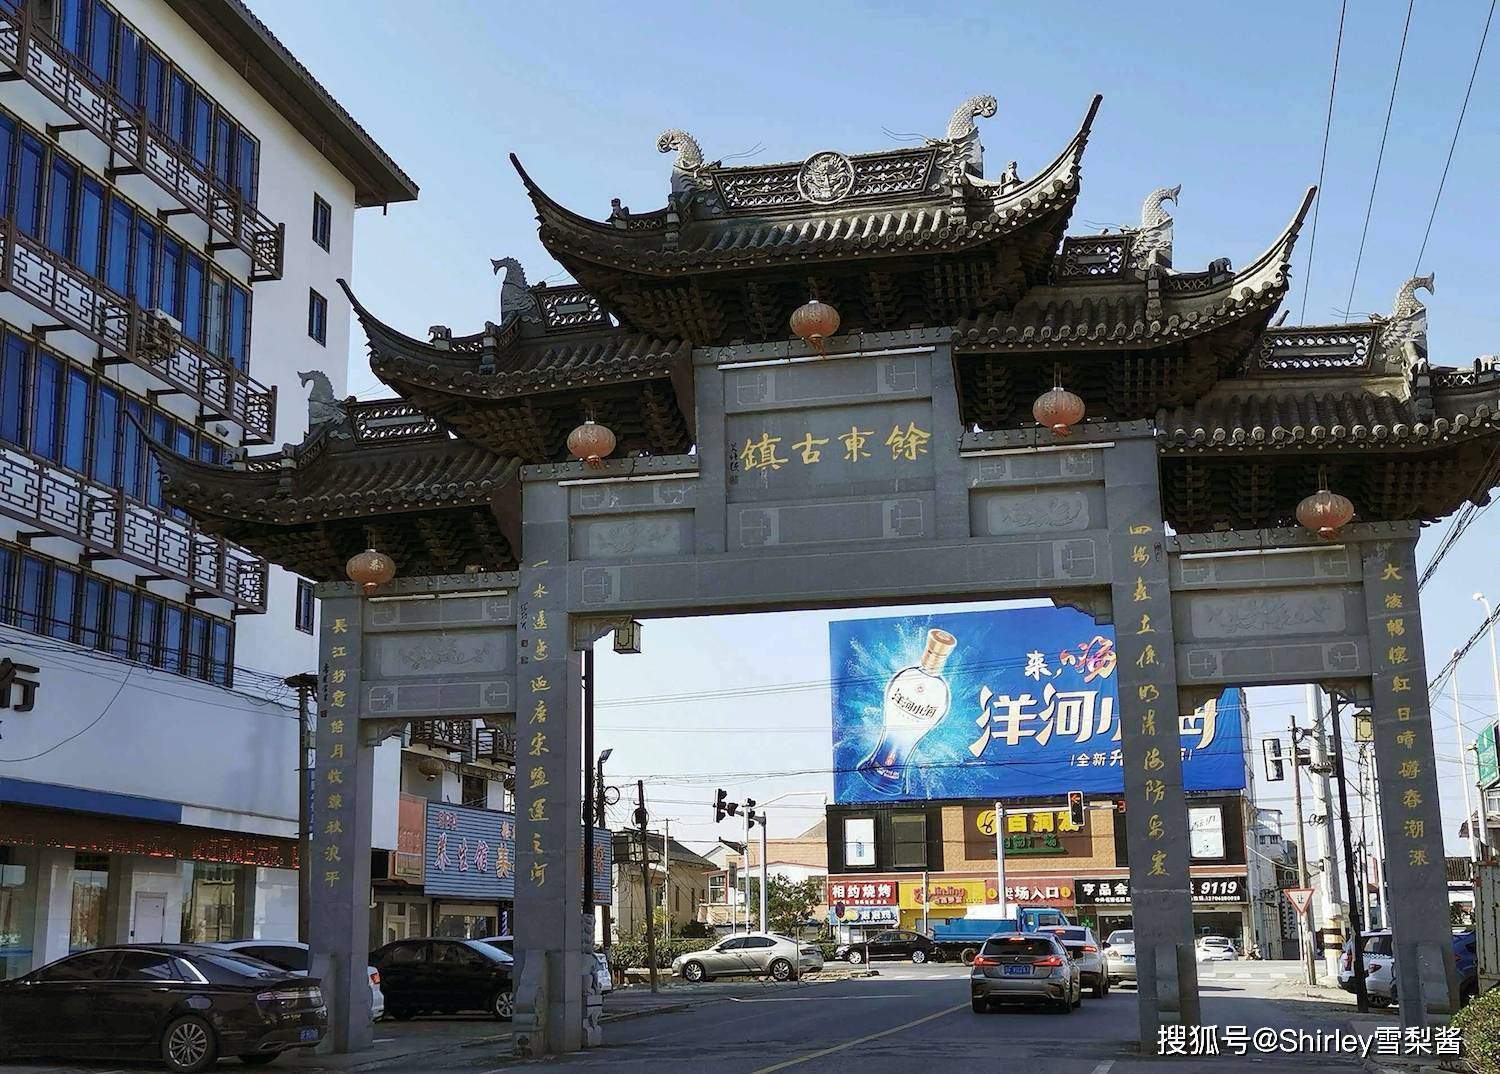 被时代遗忘的千年古镇，地处上海北大门，曾经商贸繁荣、人文璀璨